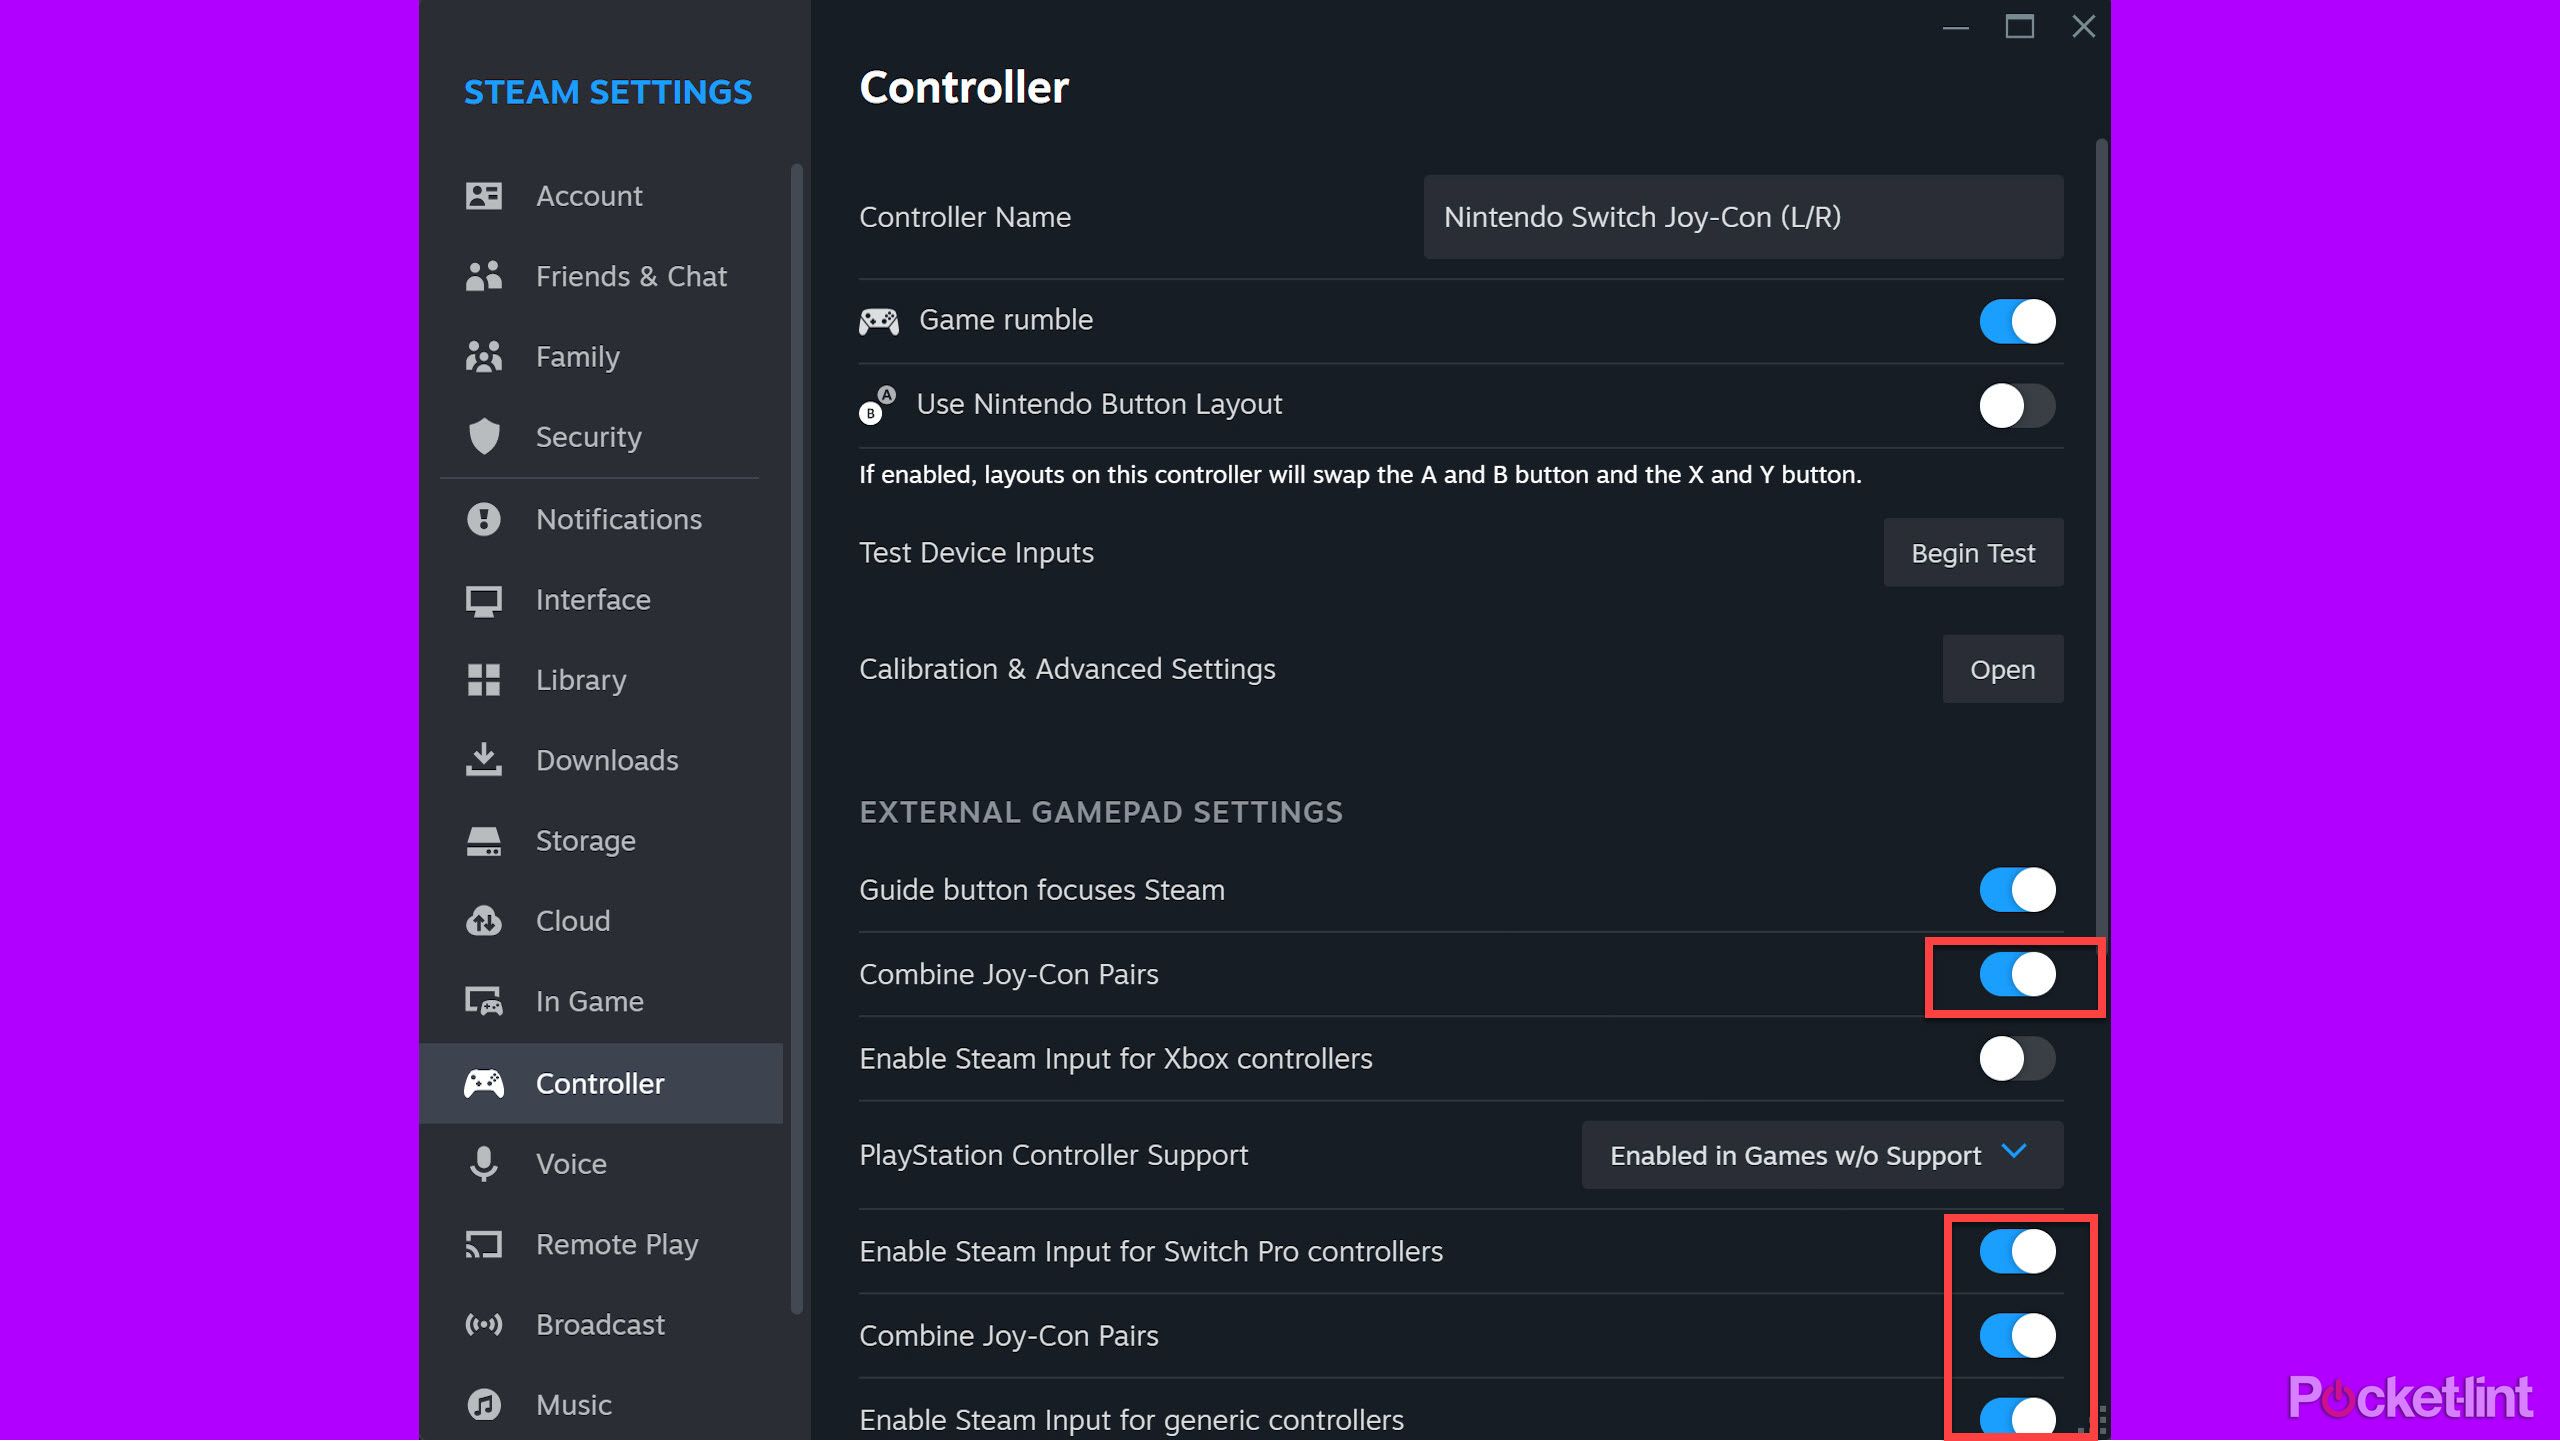 Steam Settings کا صفحہ دکھا رہا ہے Eable Steam Input for Switch Pro کنٹرولرز کو فعال کیا گیا ہے۔